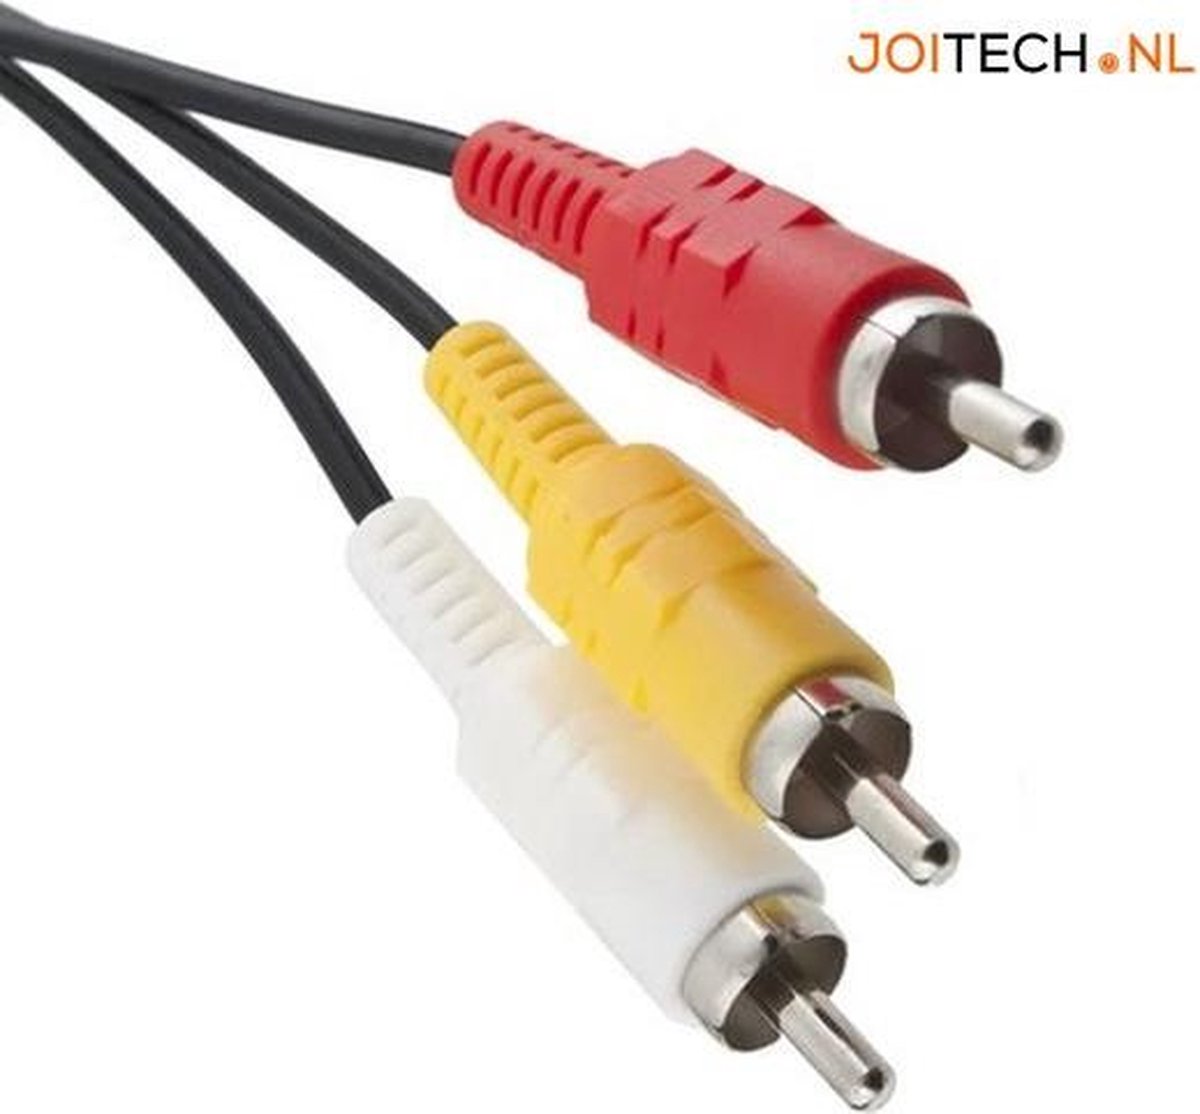 AV-Video Kabel voor PS3 / PS2 - AV Kabel Adapter - 1.8m | bol.com